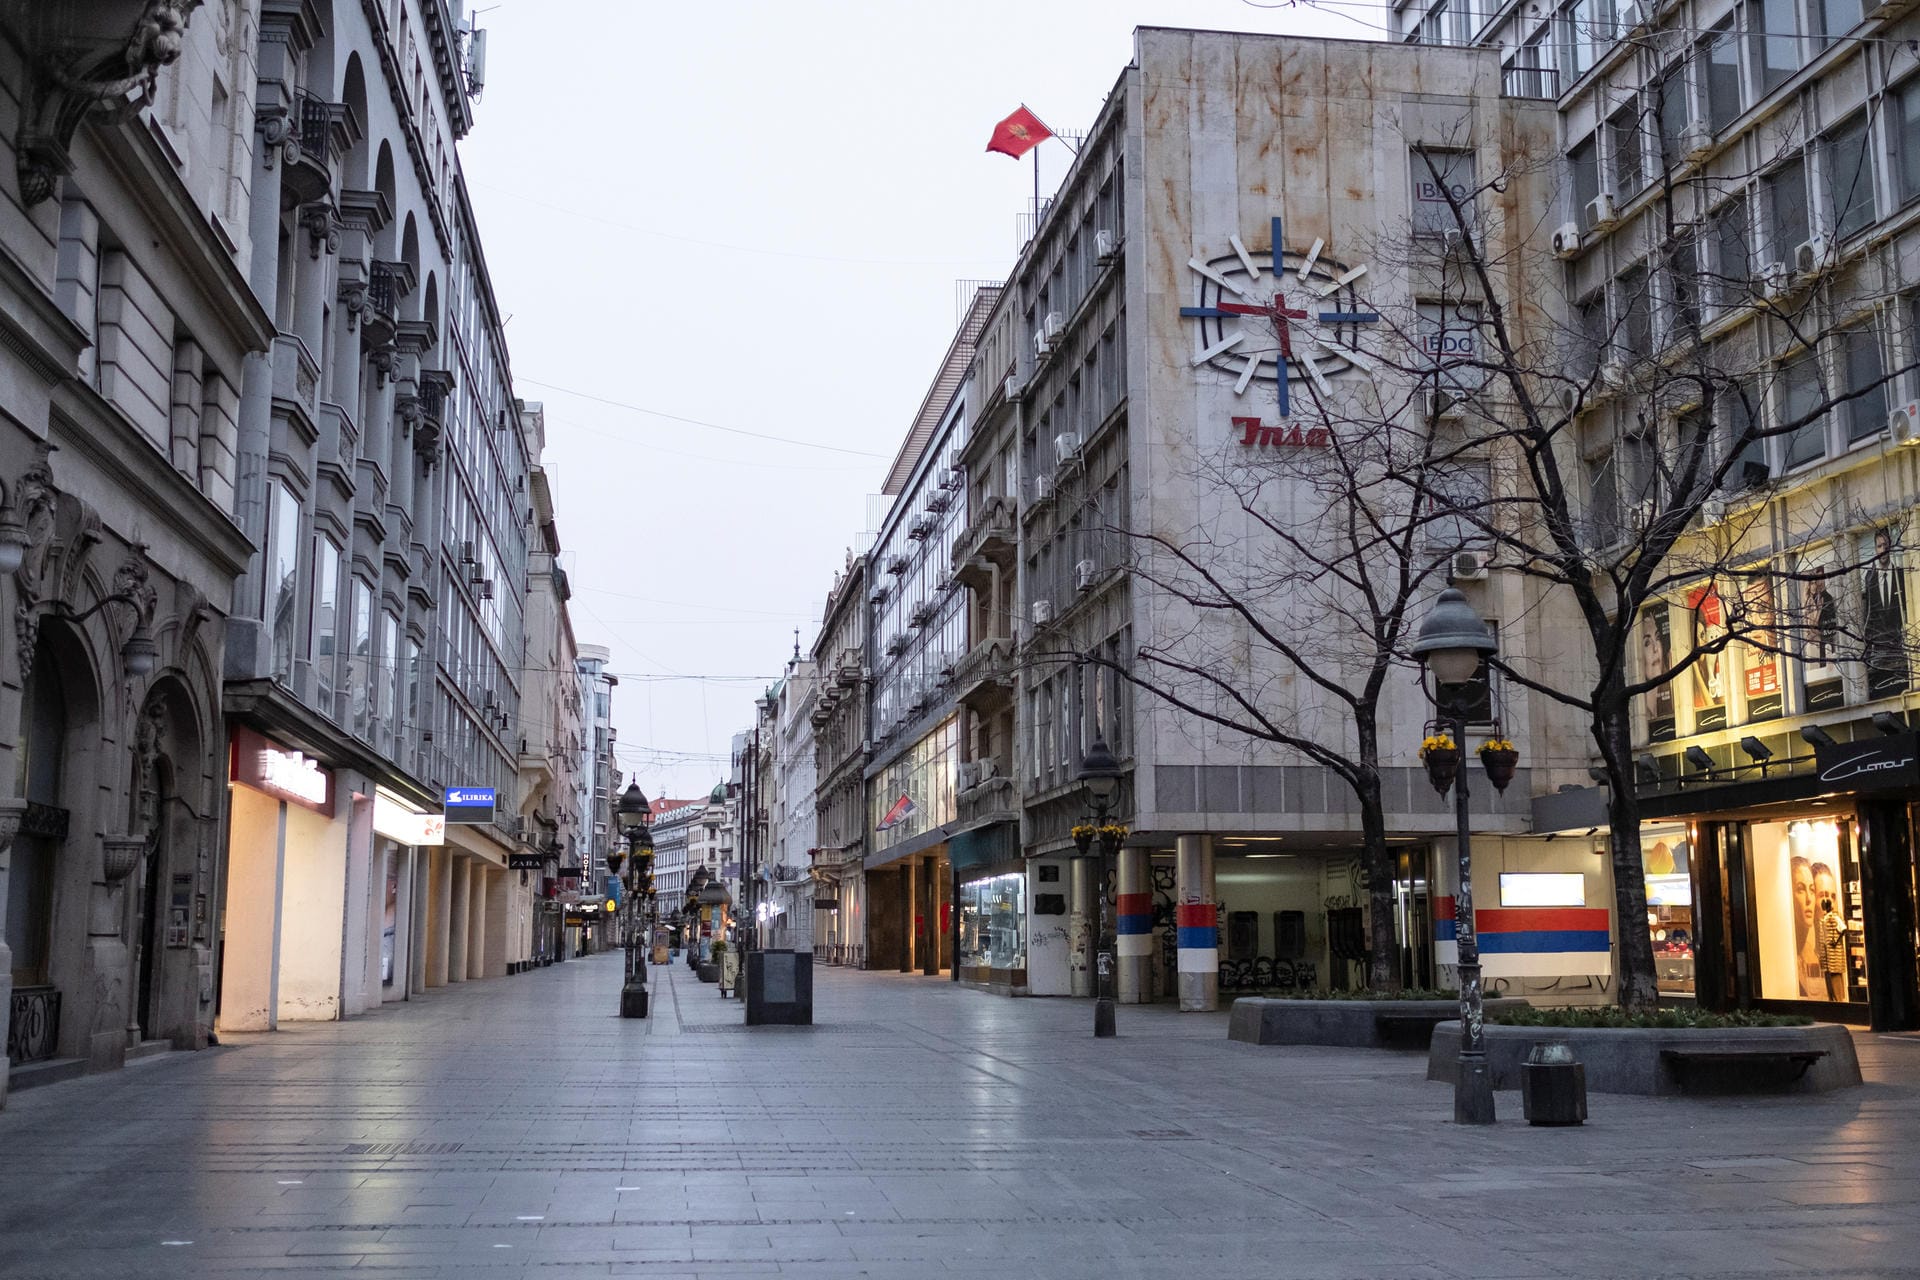 Belgrad, Serbien: Auch im Nachbarland Serbien ist die Corona-Krise angekommen. Auf der zentralen Einkaufsstraße "Knez Mihajlova" herrscht kaum Betrieb.